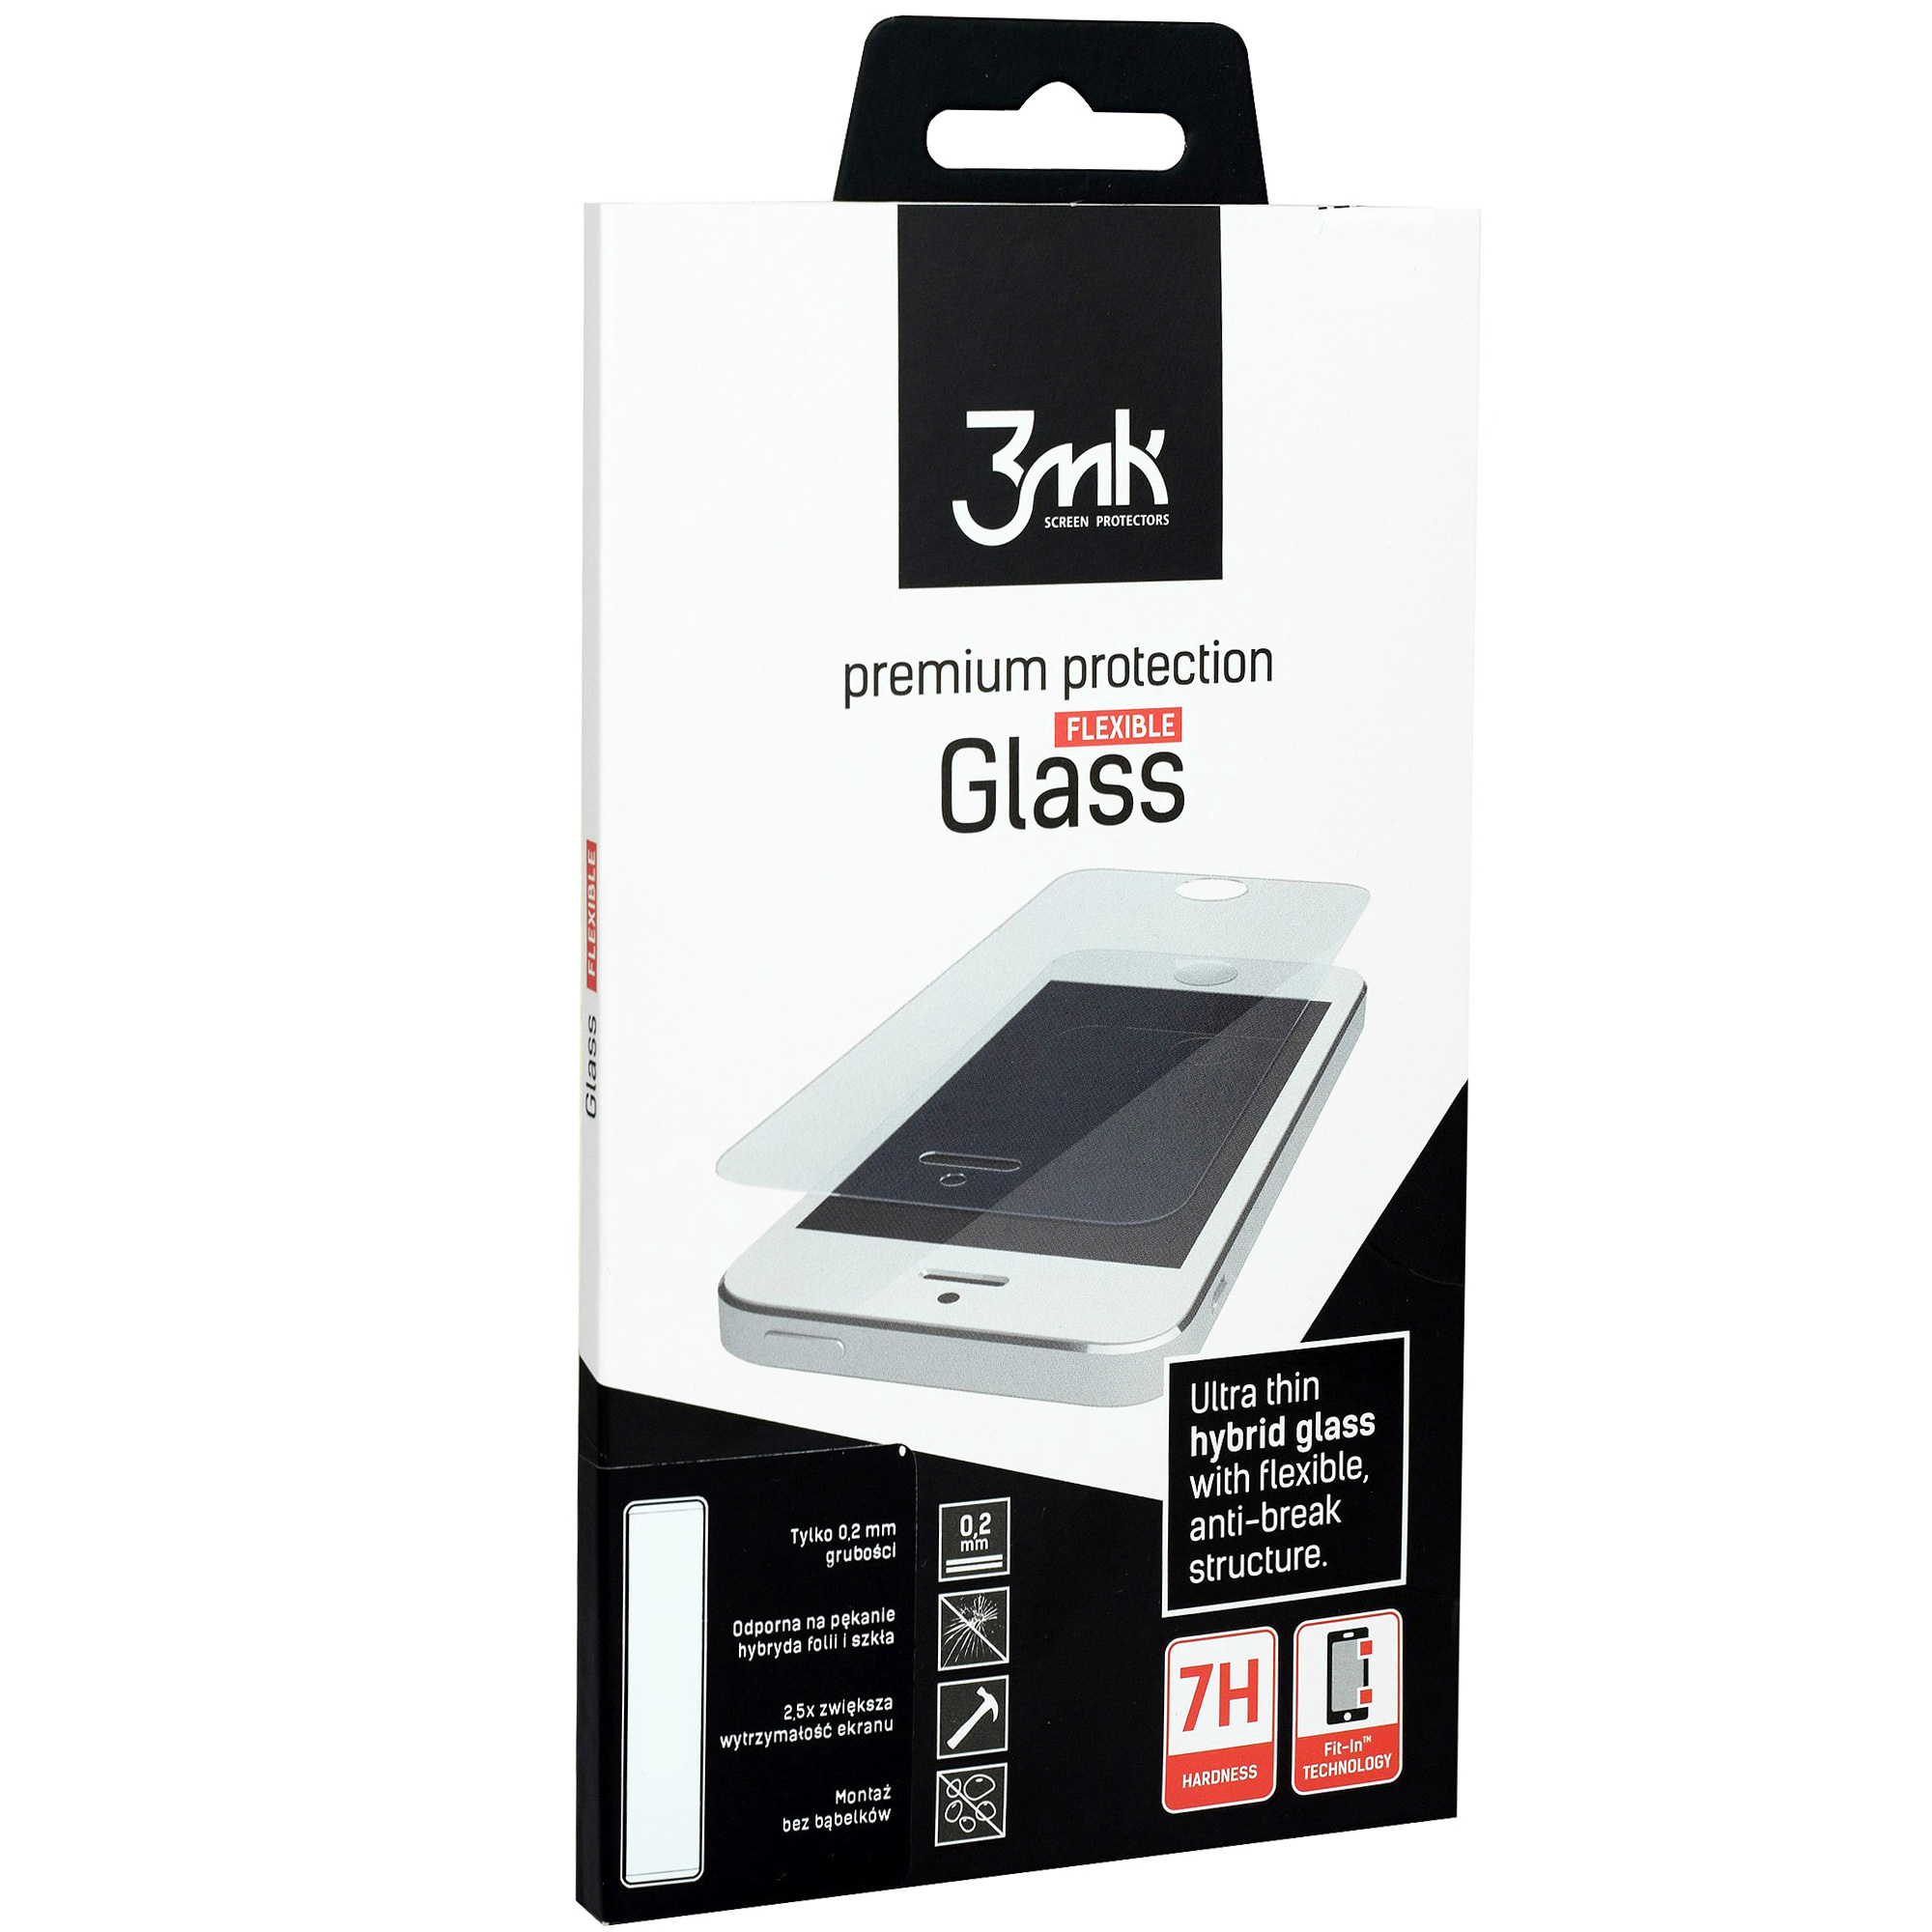 Szkło hybrydowe 3mk Flexible Glass dla Galaxy Xcover 4s/4